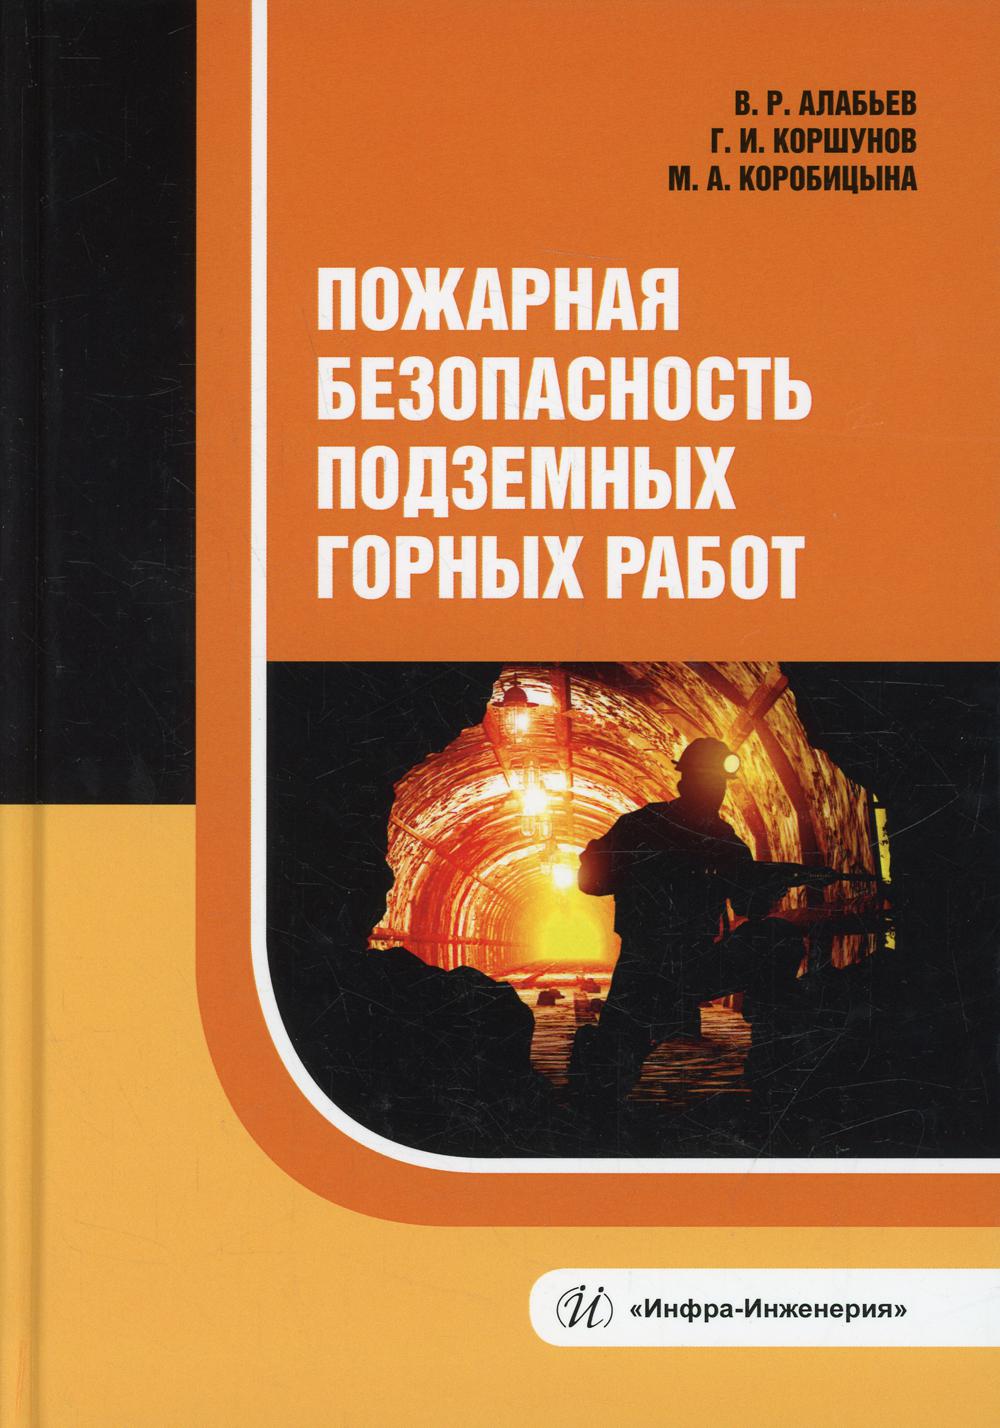 фото Книга пожарная безопасность подземных горных работ инфра-инженерия